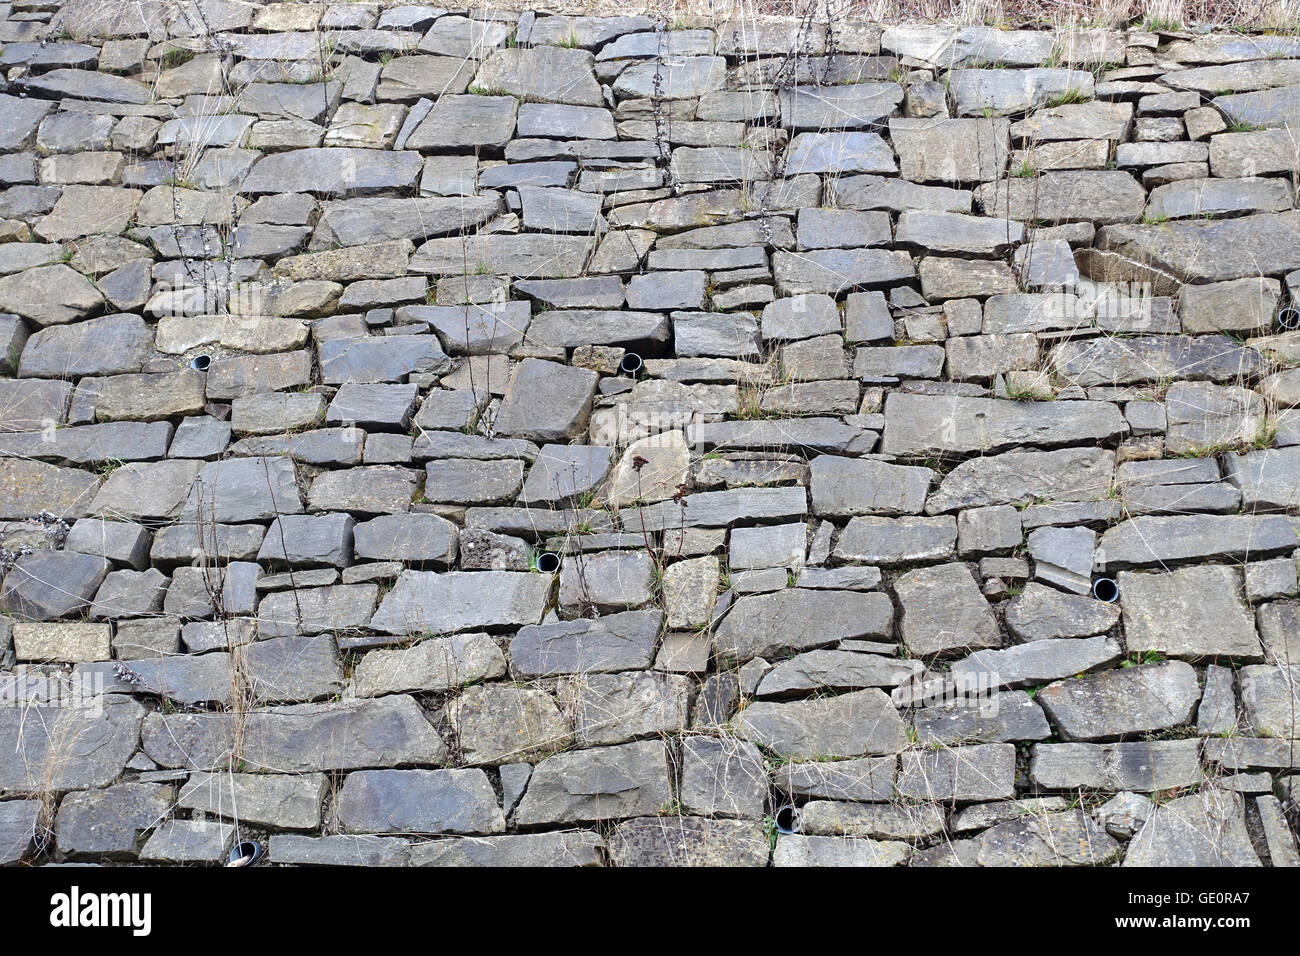 Die Mauer oder der steinige Weg - le mur Banque D'Images